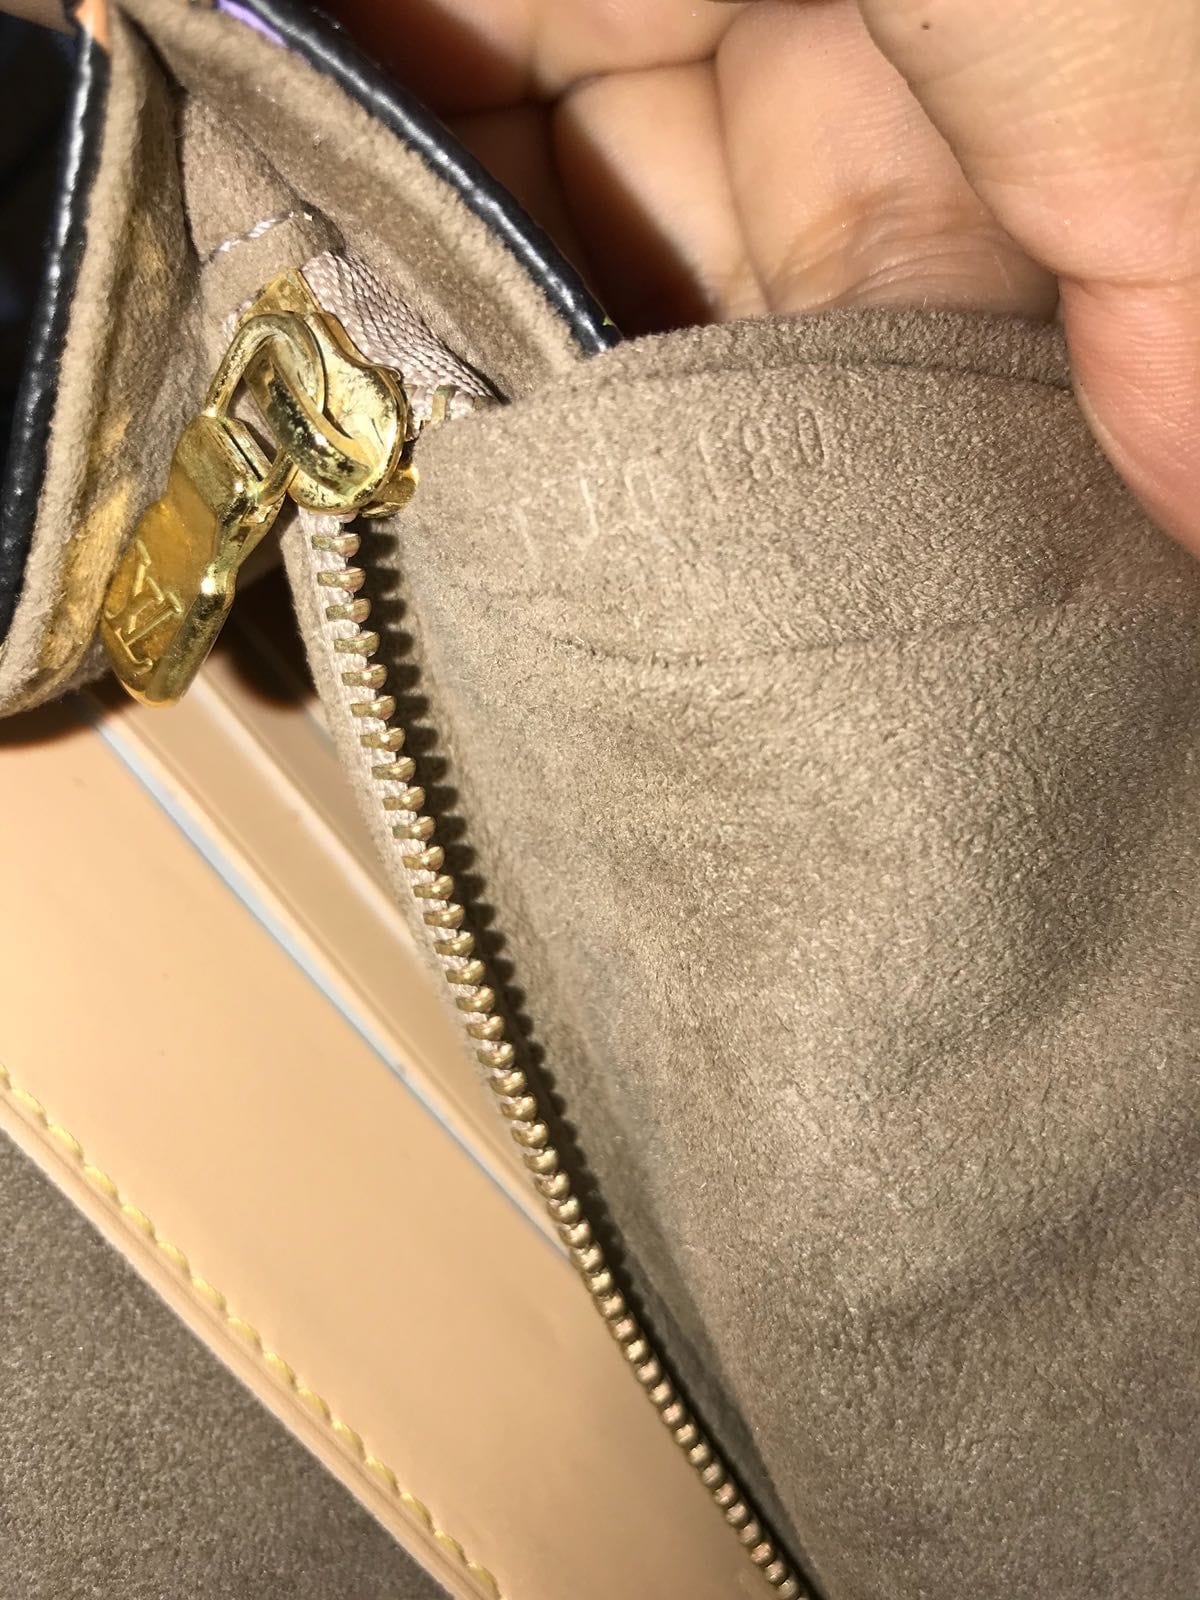 courtney clutch purse